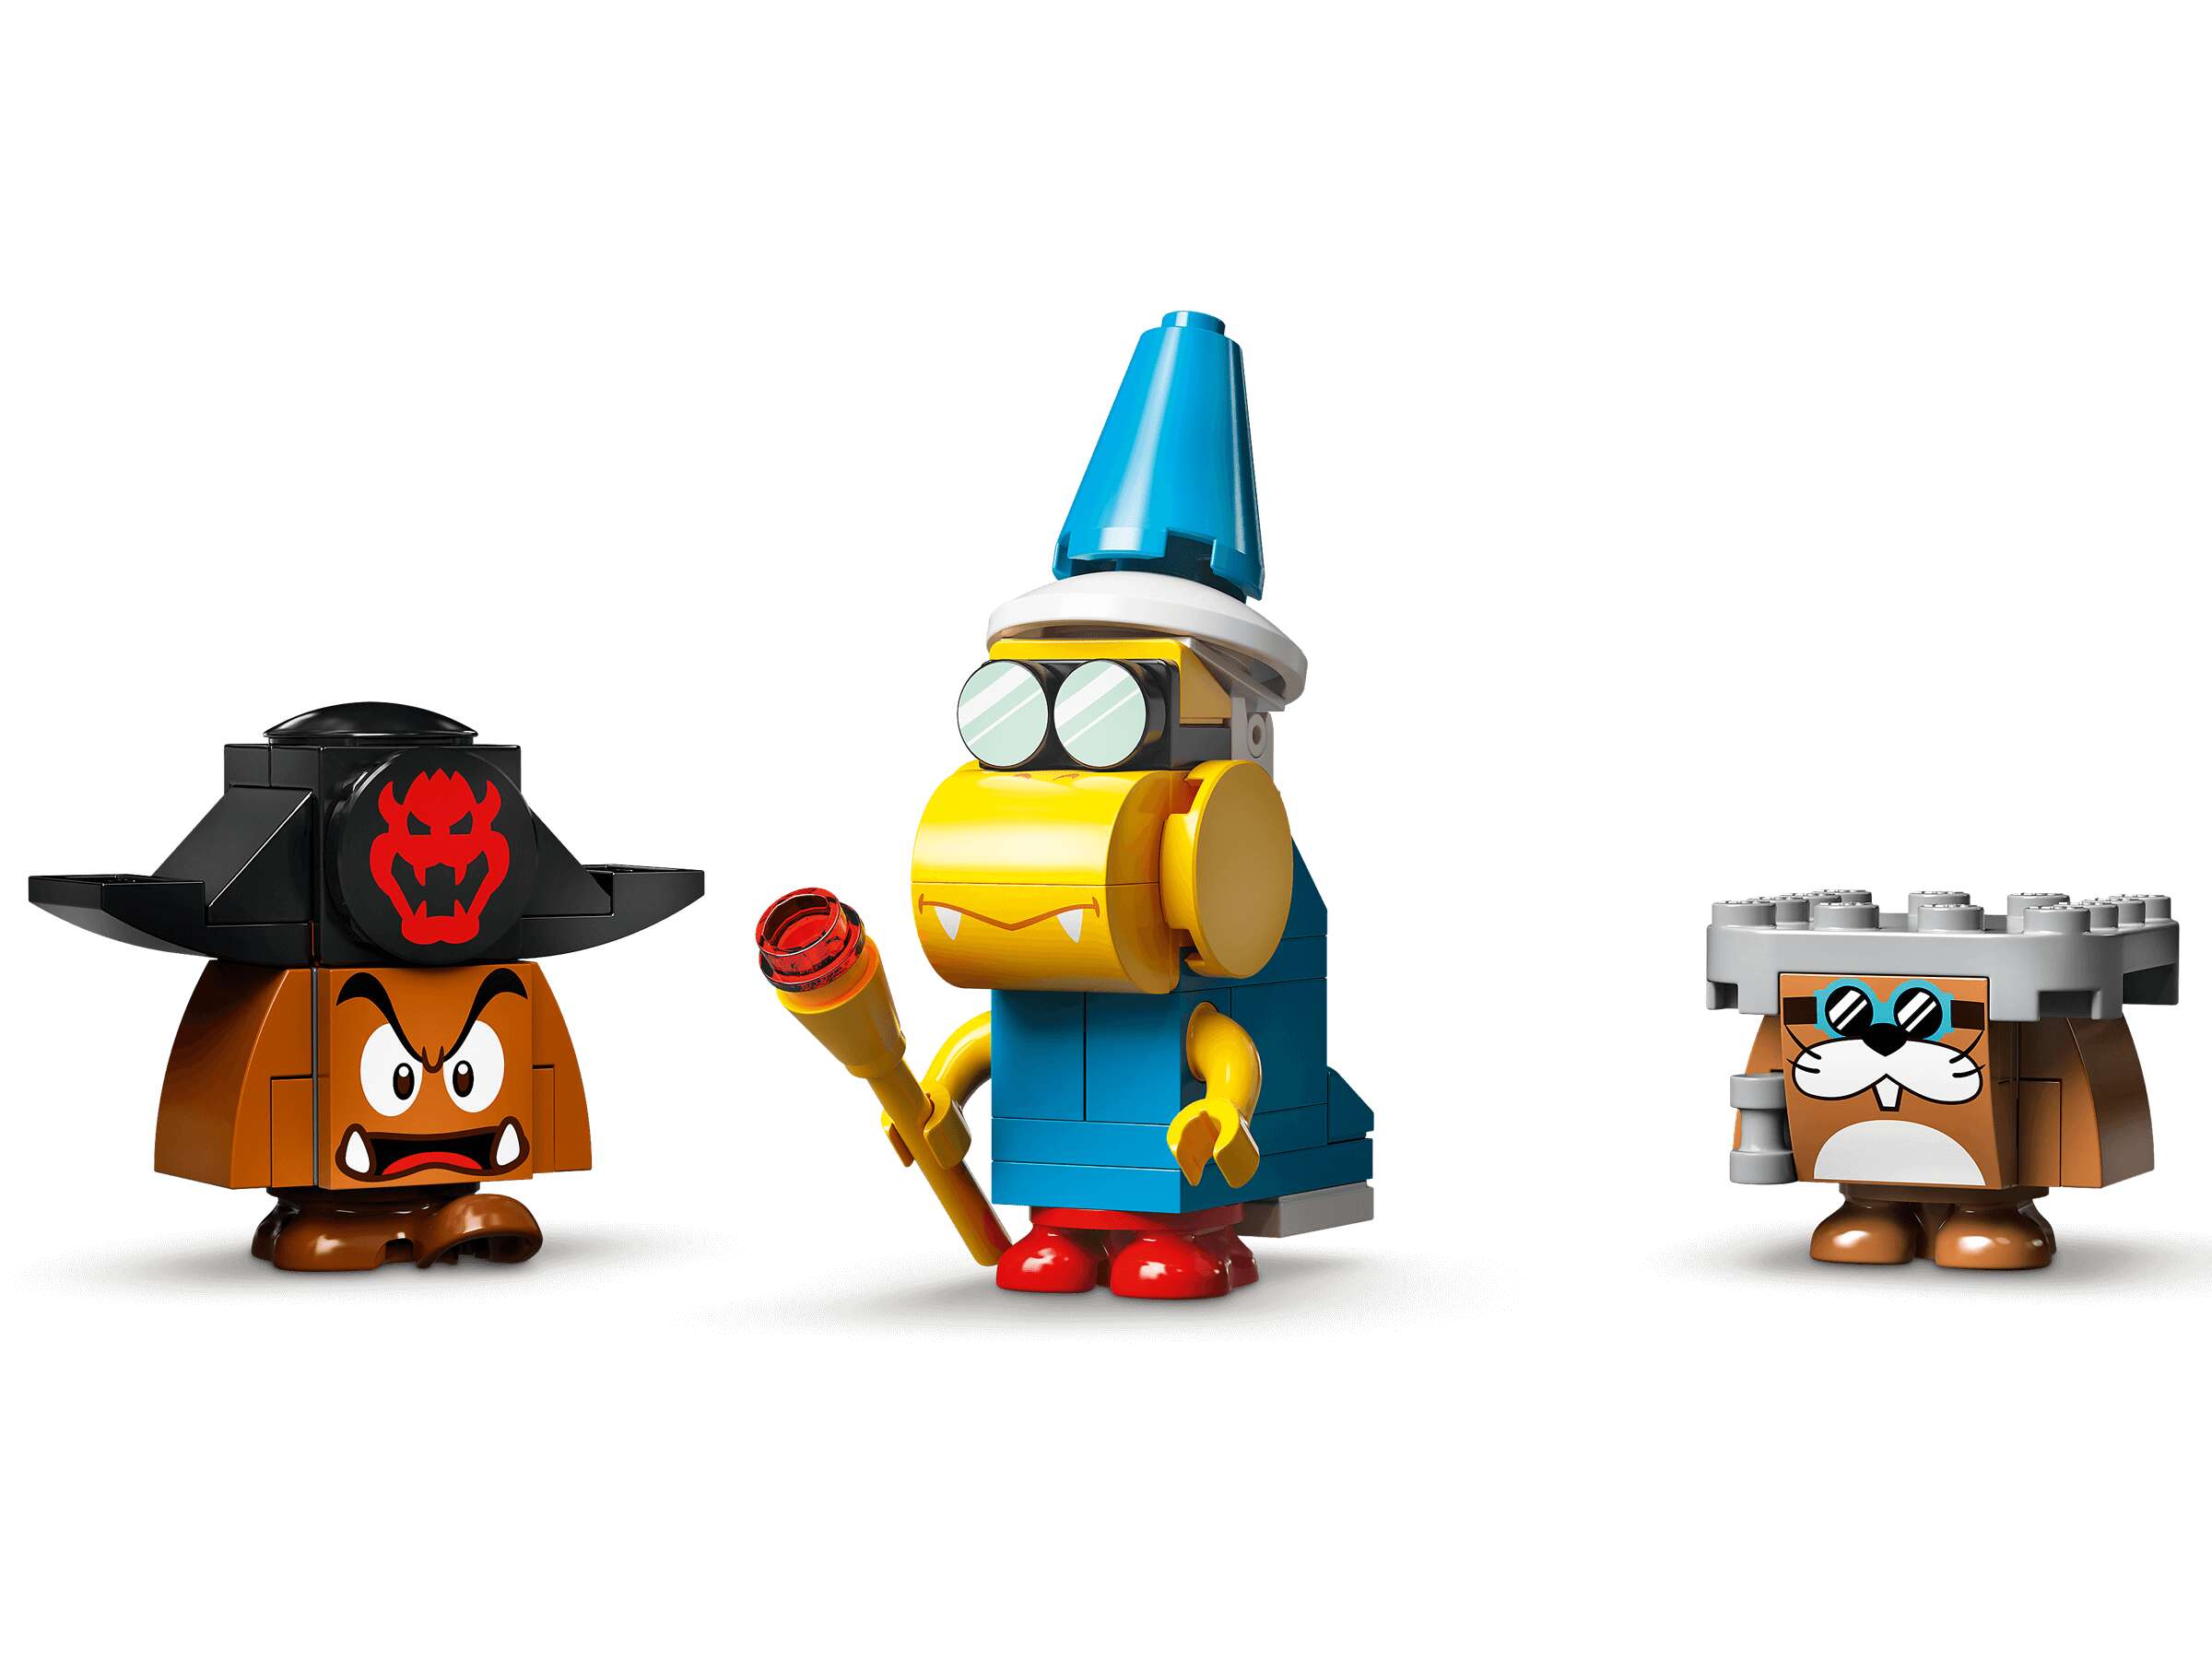 LEGO 71391 Super Mario Bowsers Luftschiff – Erweiterungsset mit 3 Figuren